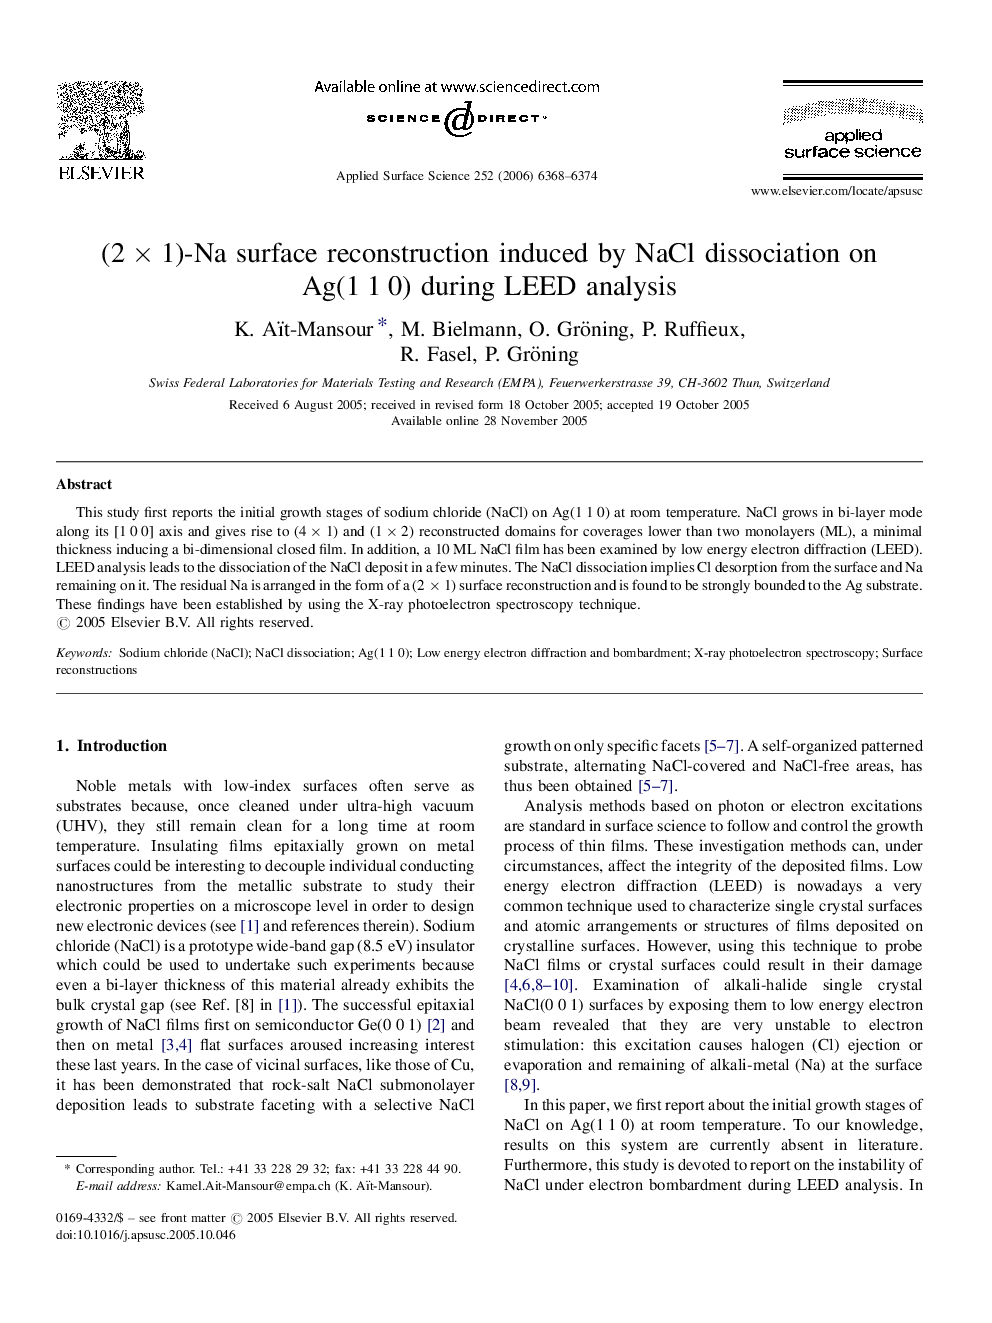 (2 Ã 1)-Na surface reconstruction induced by NaCl dissociation on Ag(1 1 0) during LEED analysis